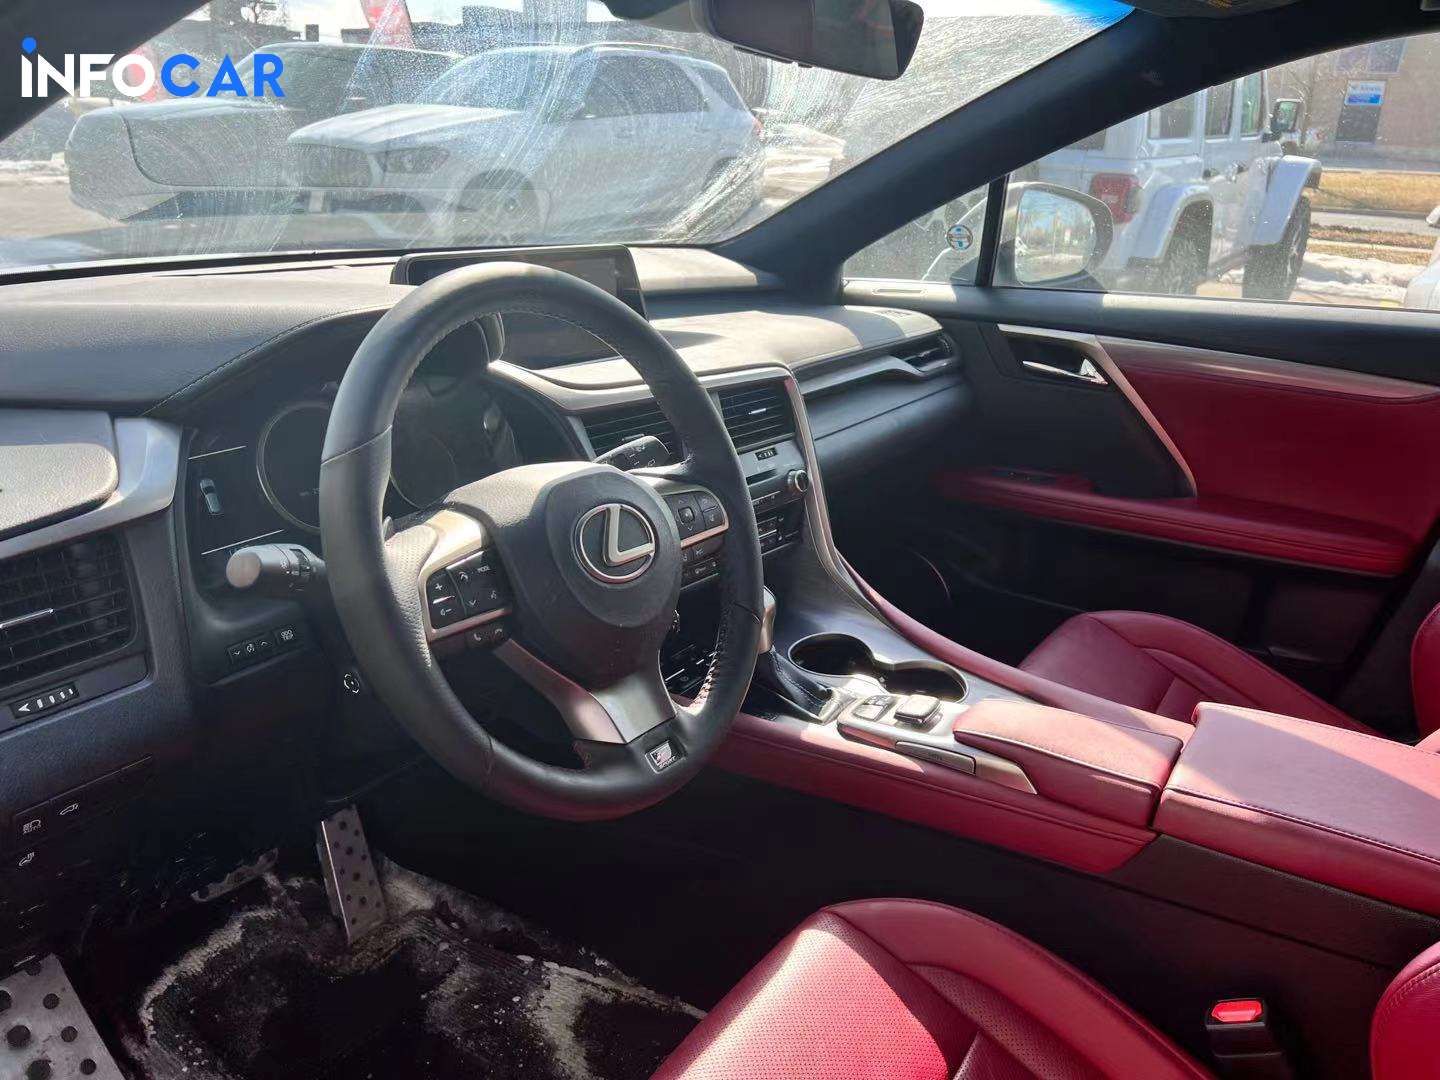 2018 Lexus RX 350 premium - INFOCAR - Toronto Auto Trading Platform